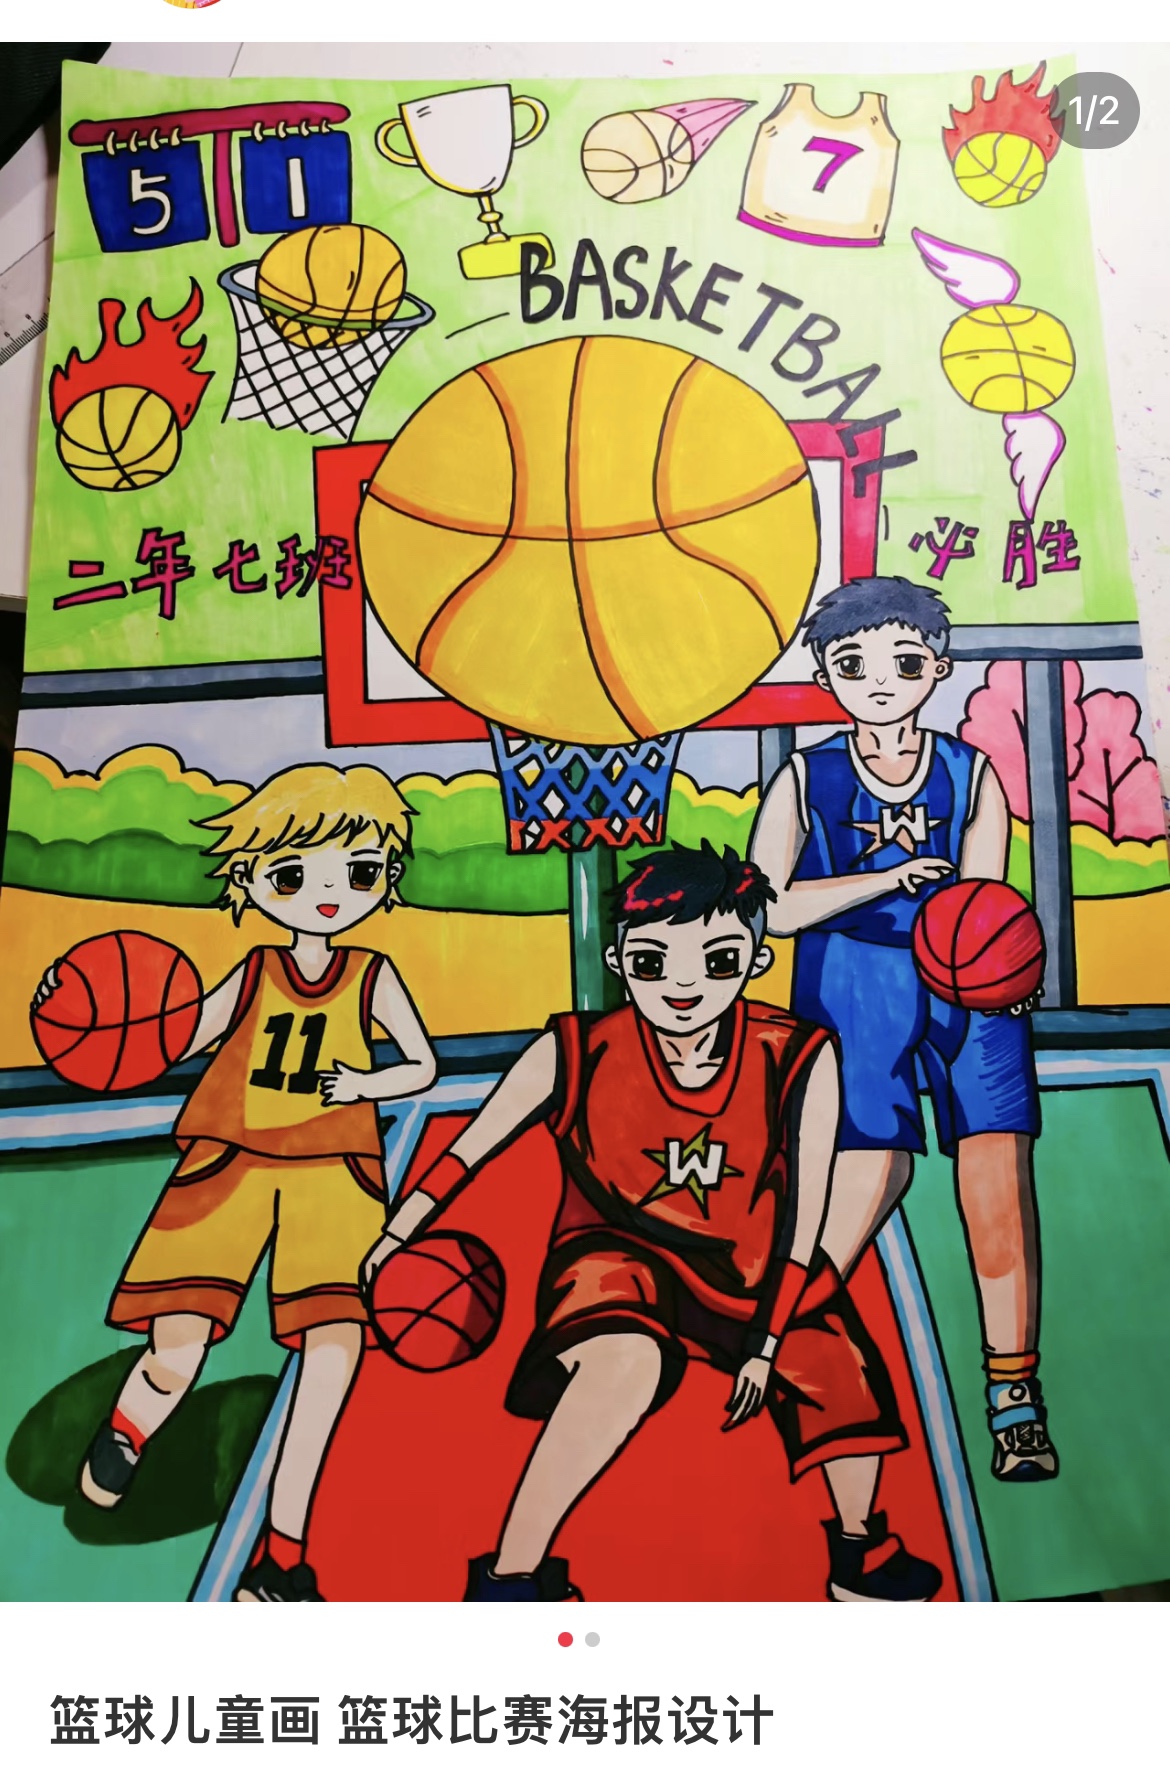 篮球运动主题绘画儿童画主题画简笔画电子版模板小学生竖版图片